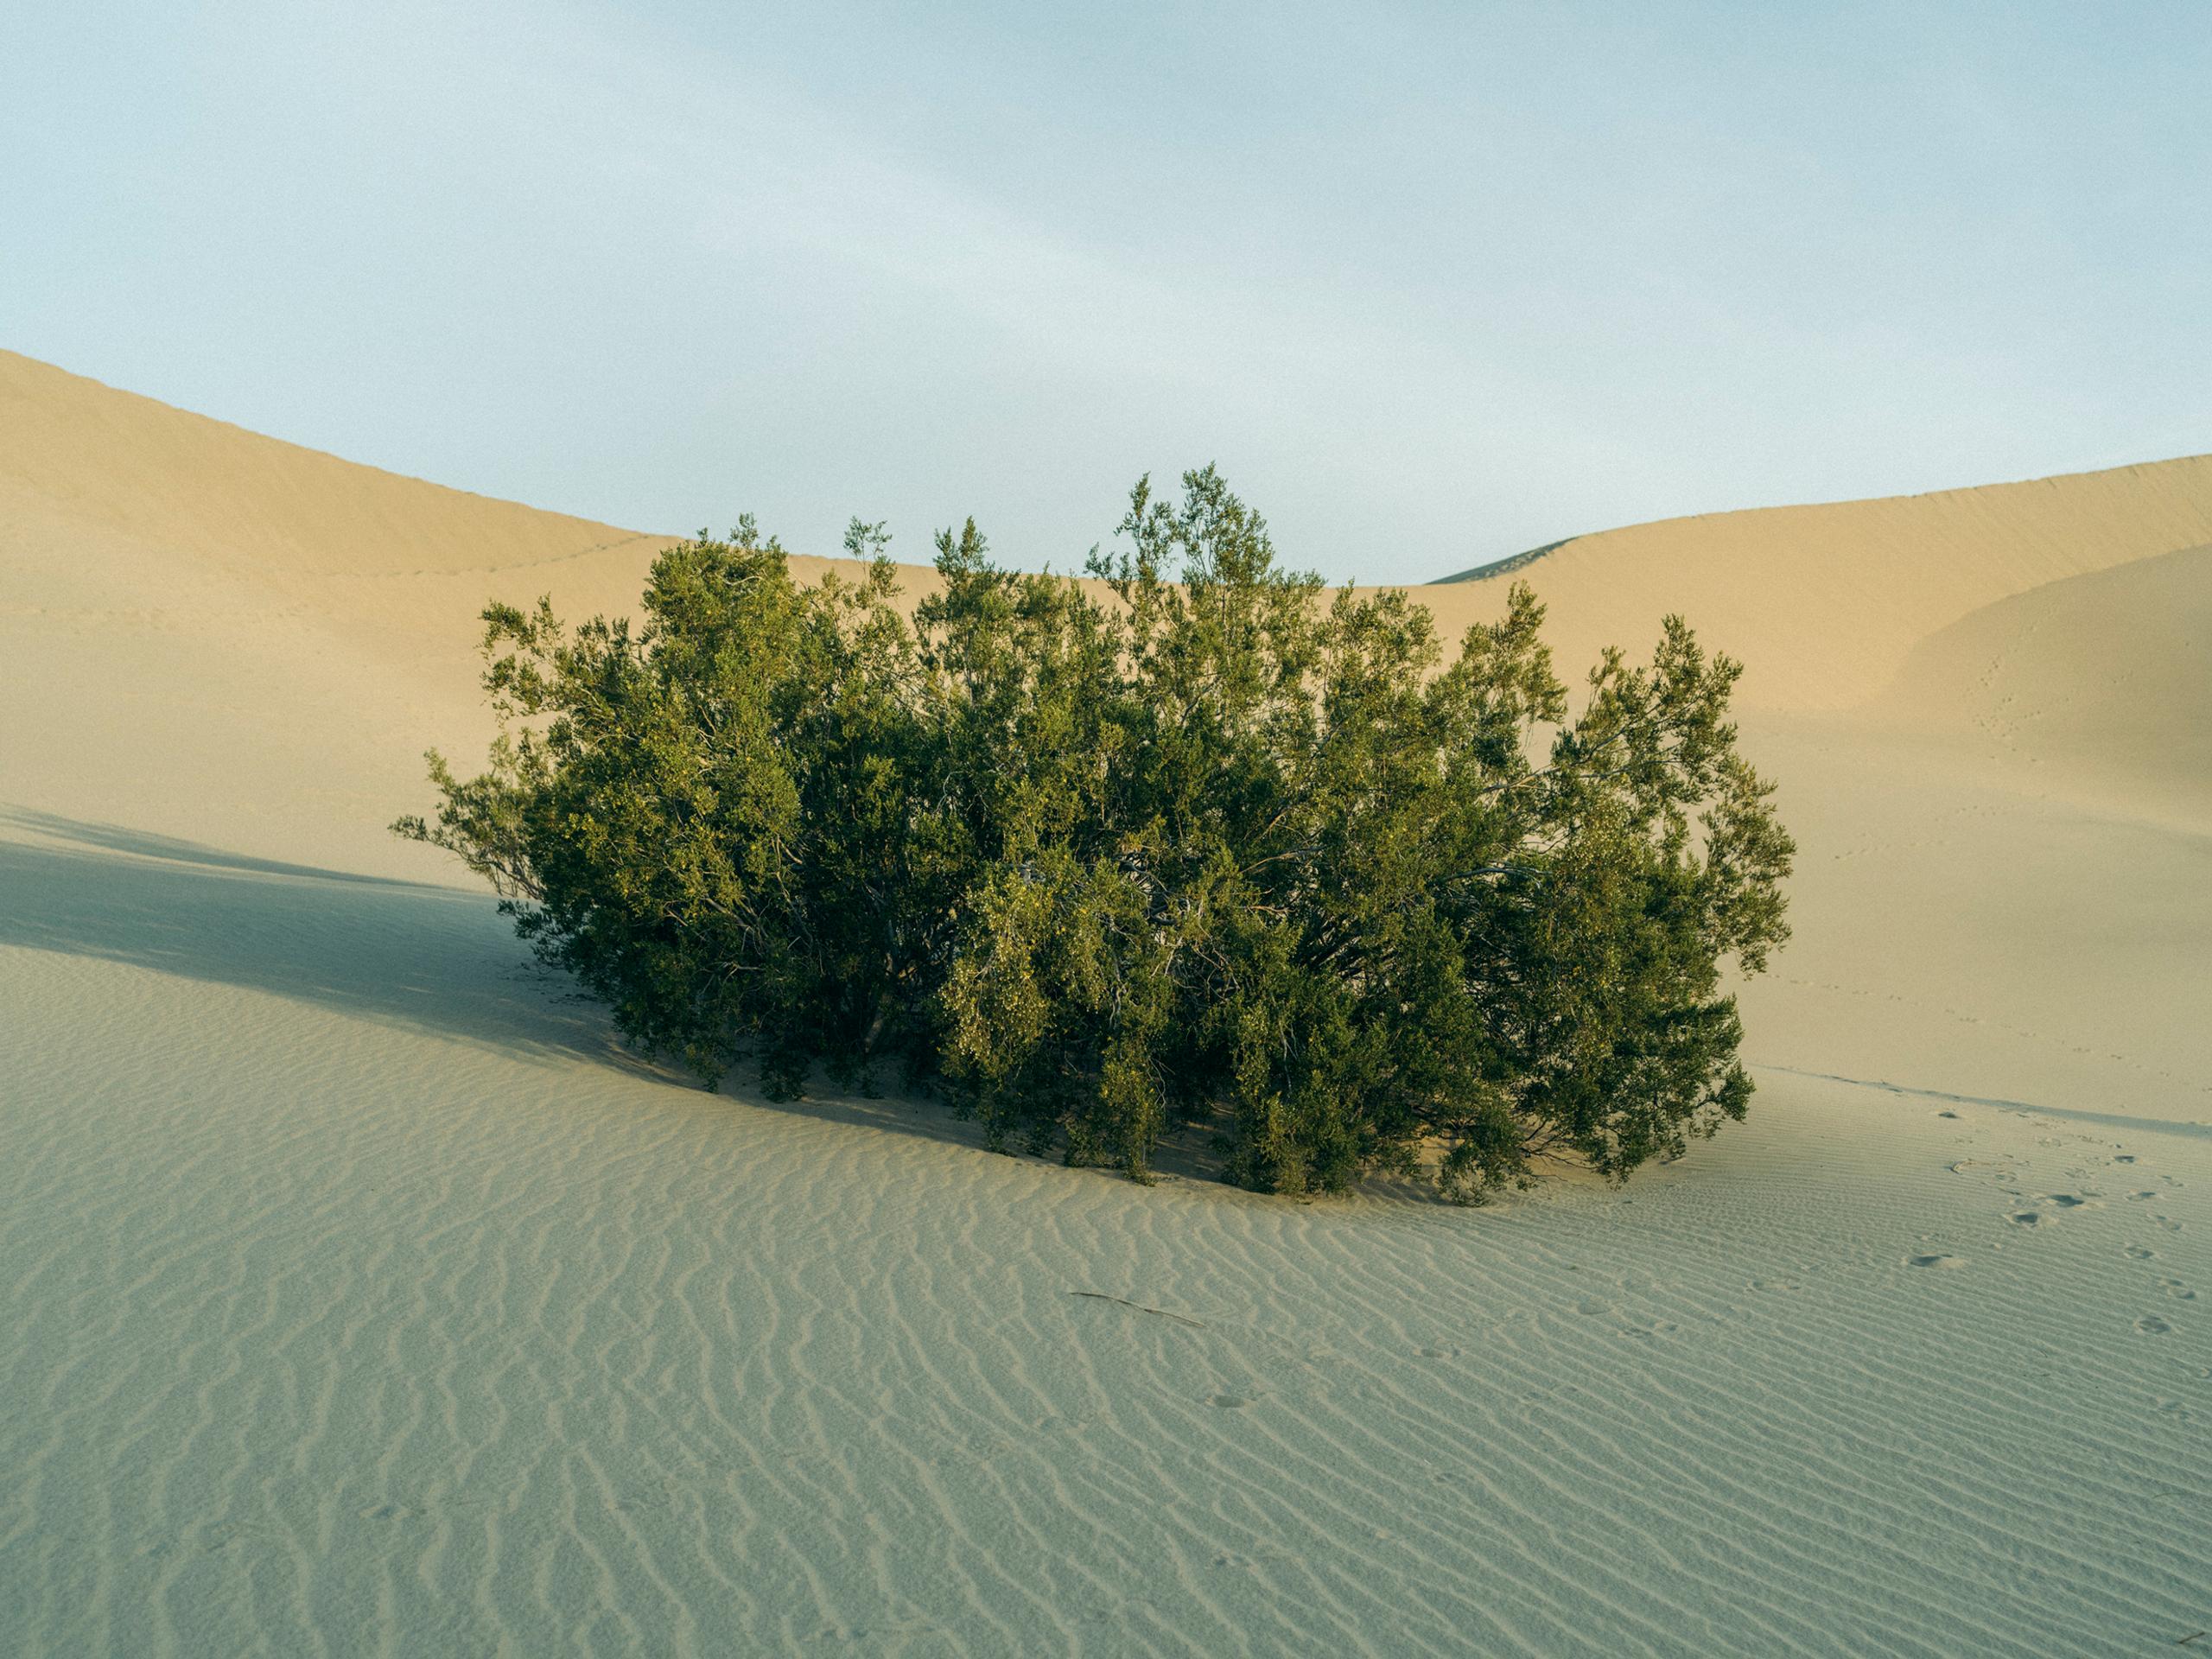 Landscape of sand dunes